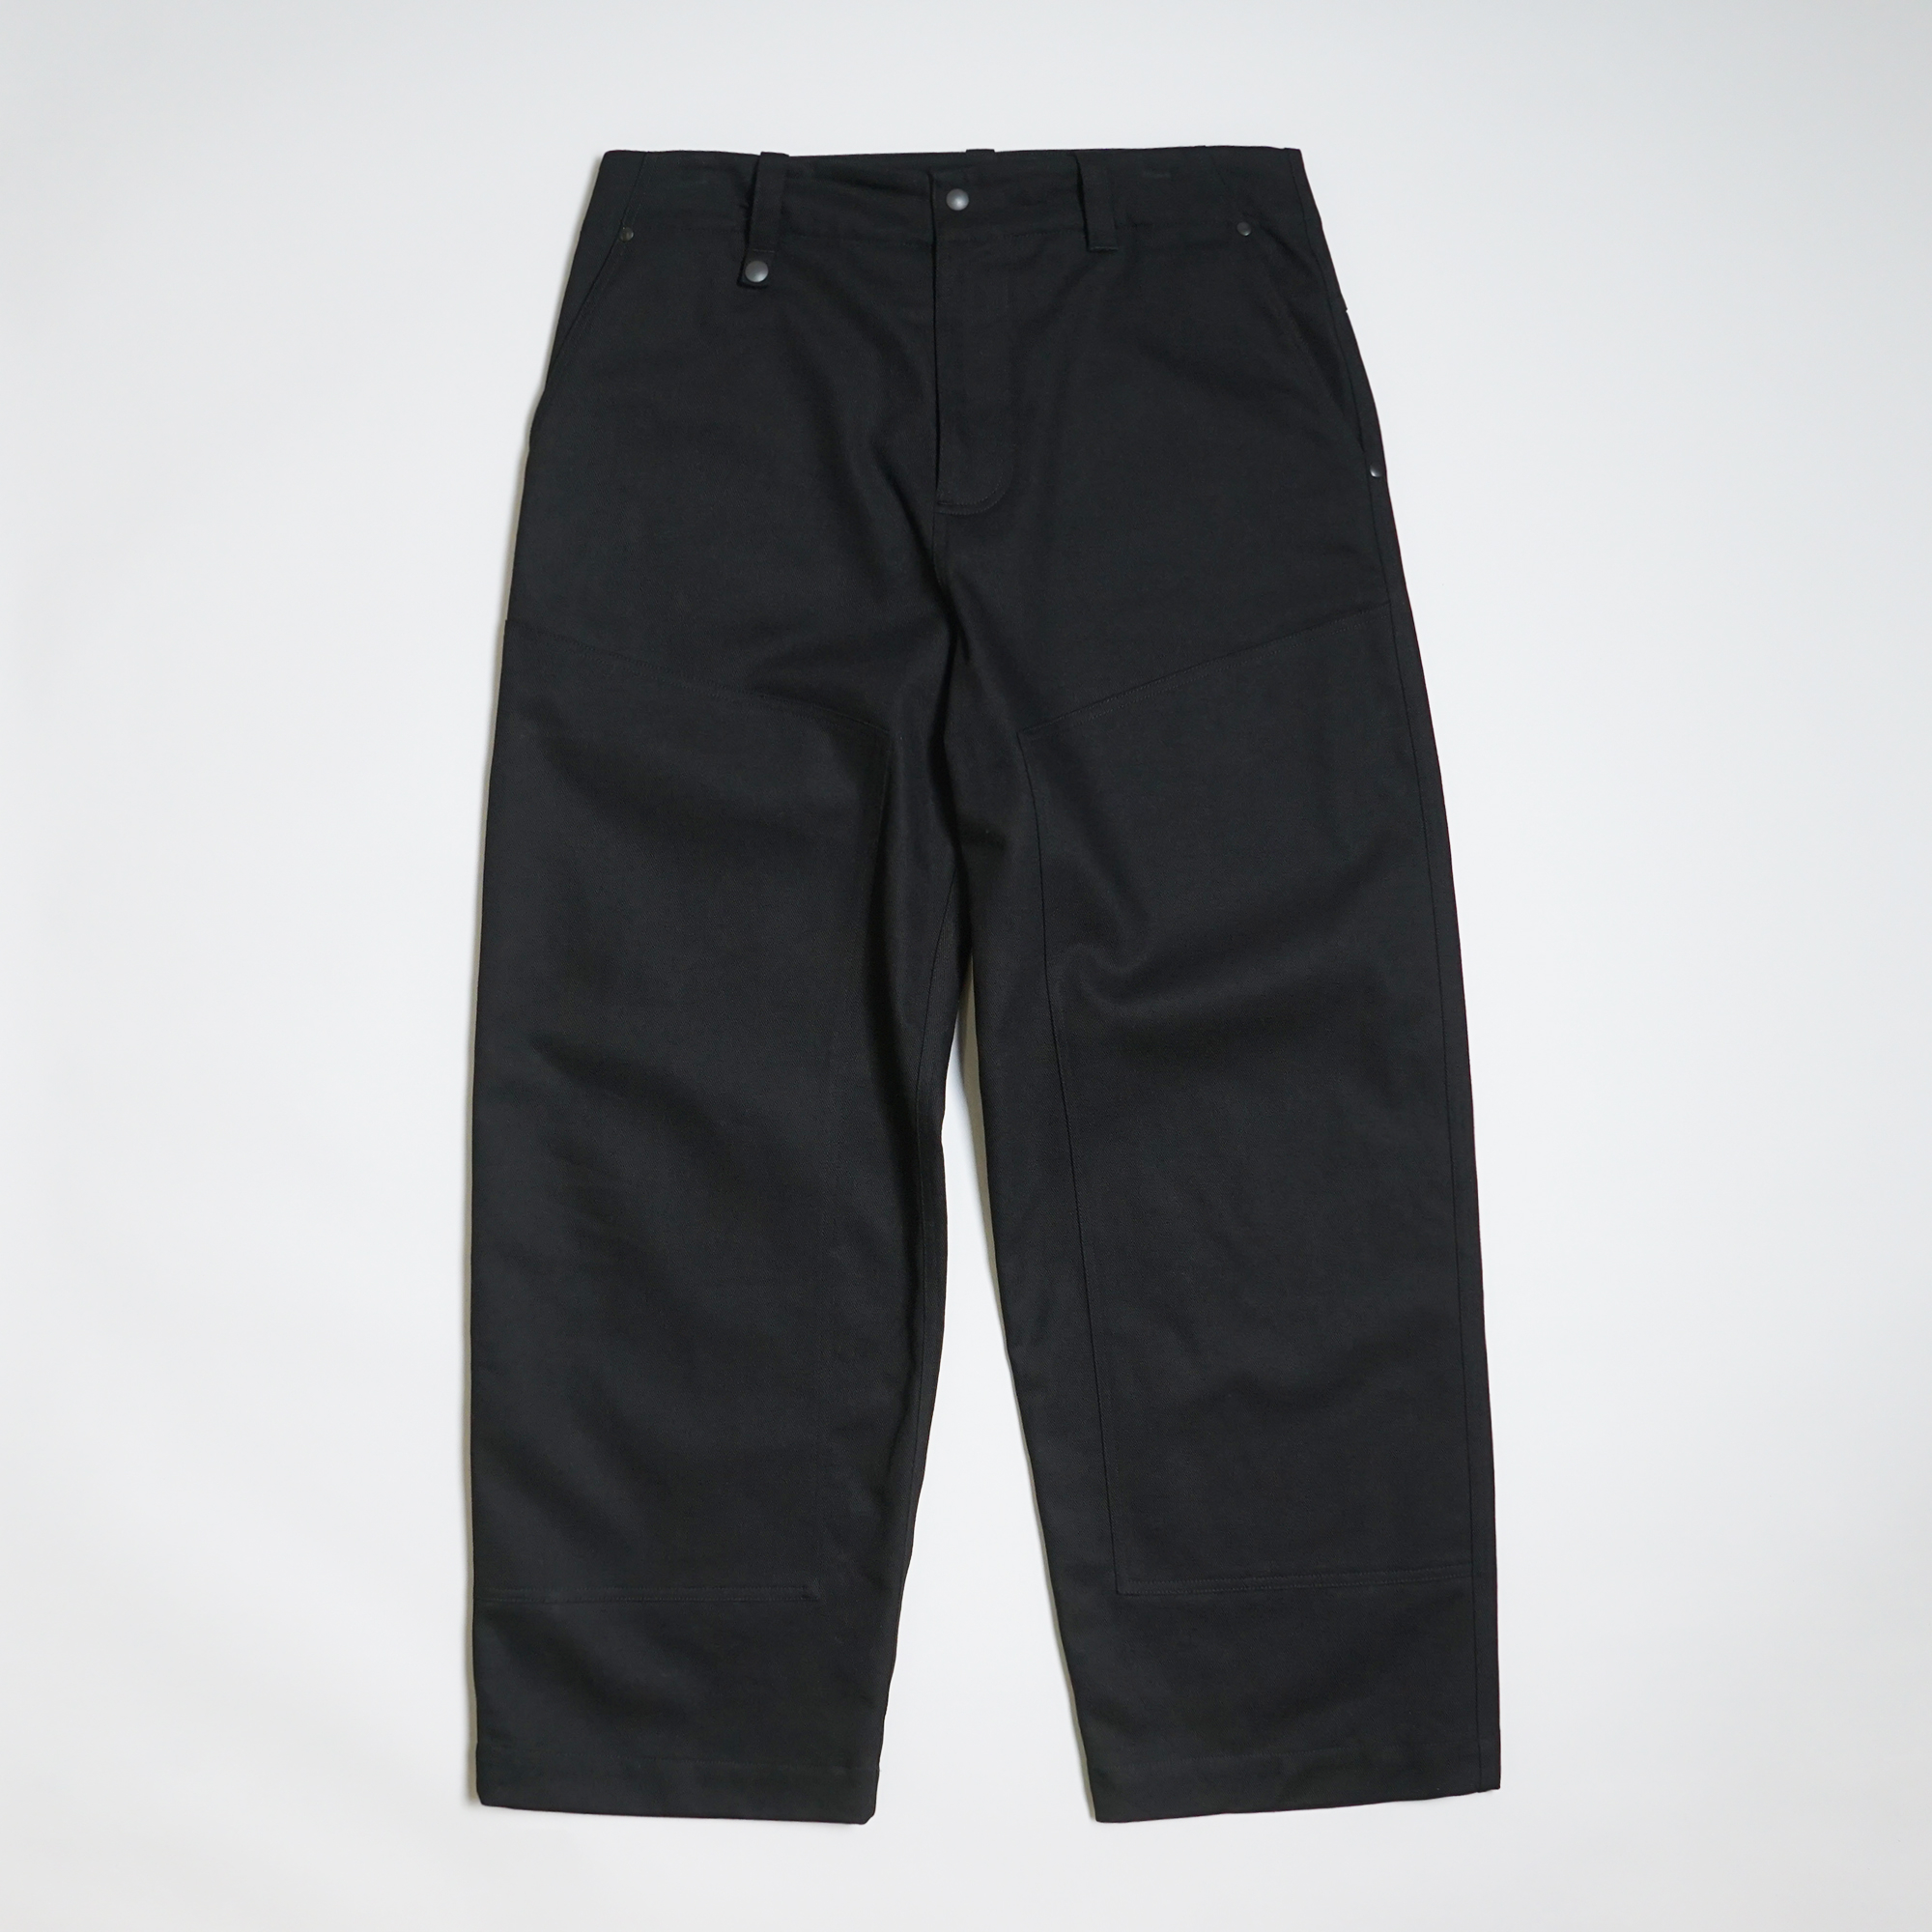 Pantalon de jour coloris Noir par Arpenteur pour C'H'C'M'